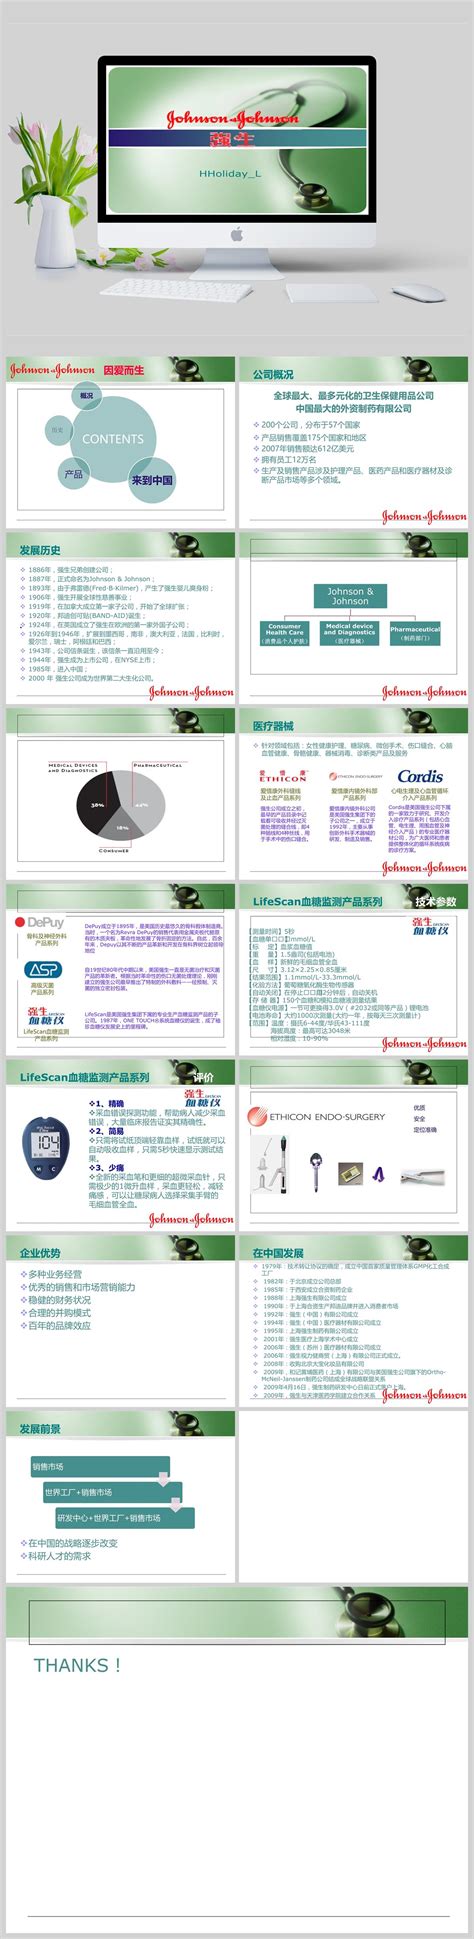 展会介绍-上海国际医疗器械展览会